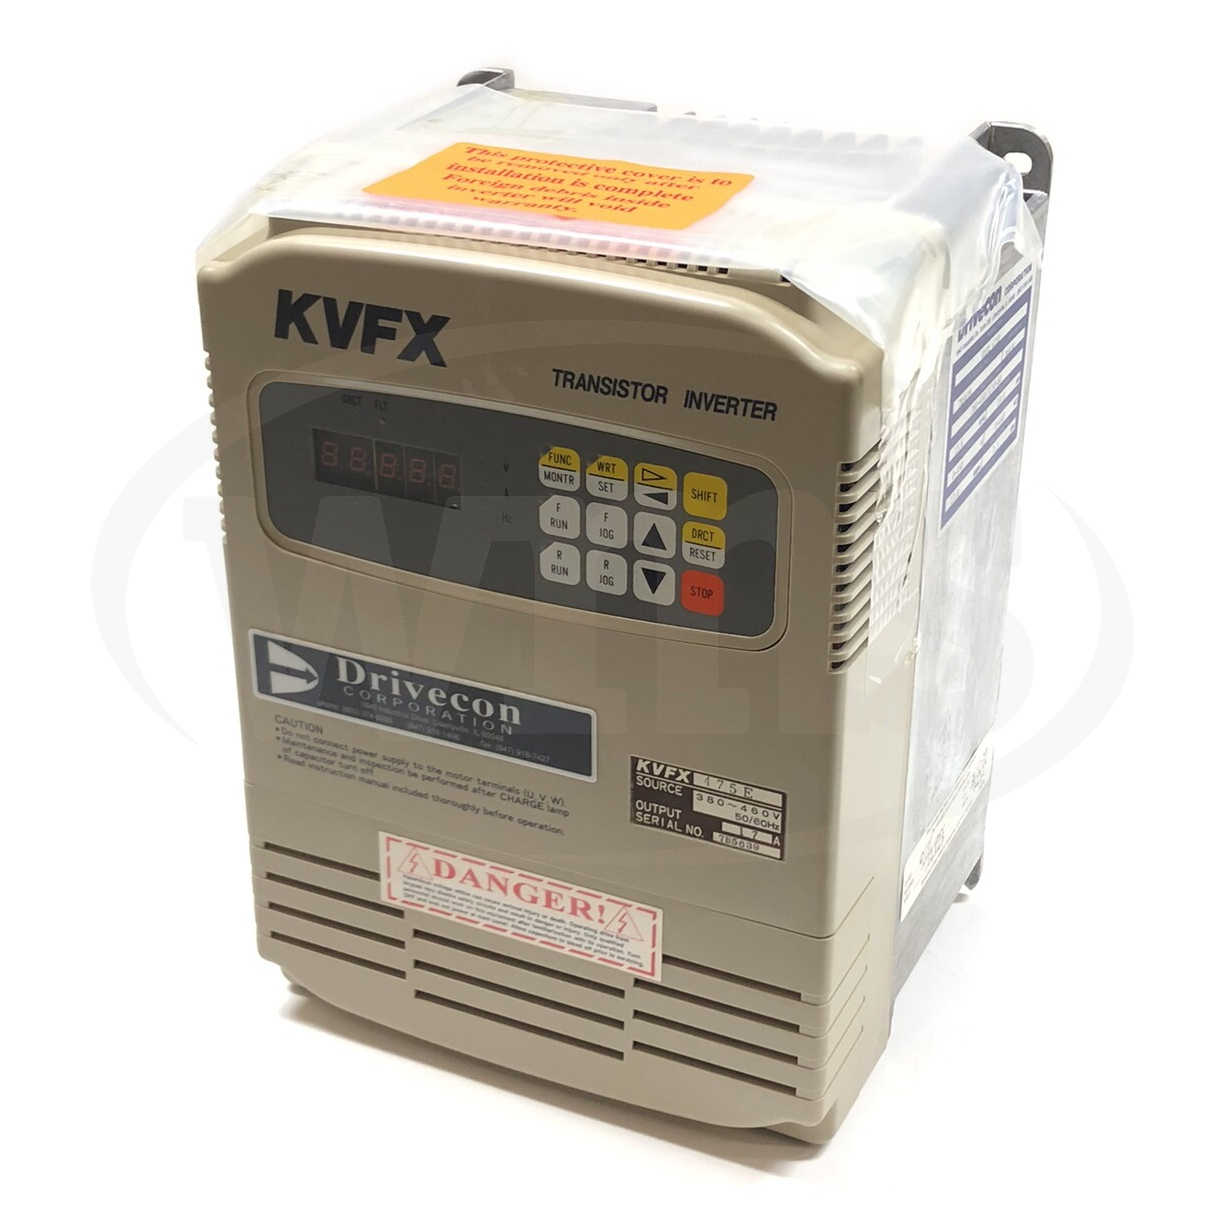 KVFX-475-E 10HP Drivecon Transistor Inverter, 2